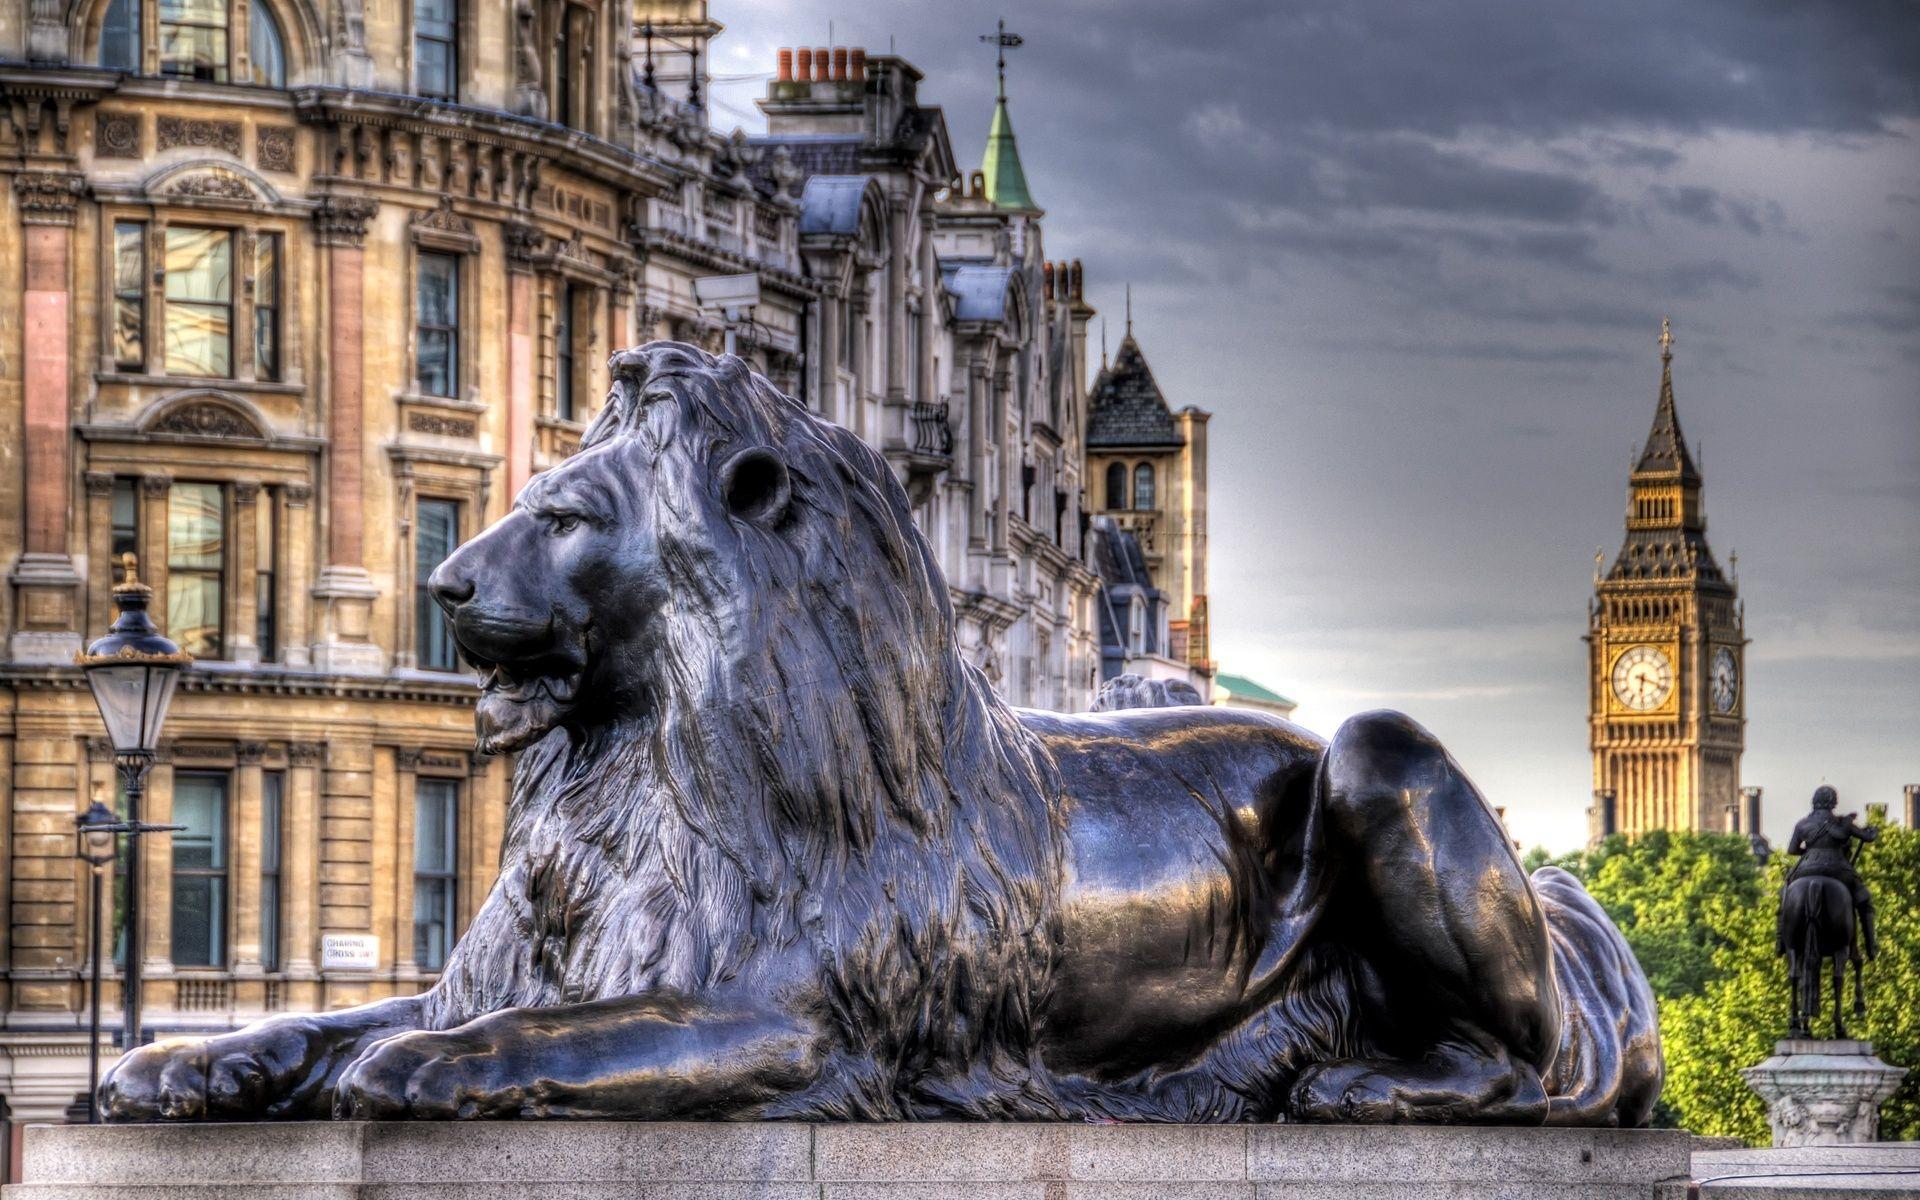 Trafalgar Square Statues